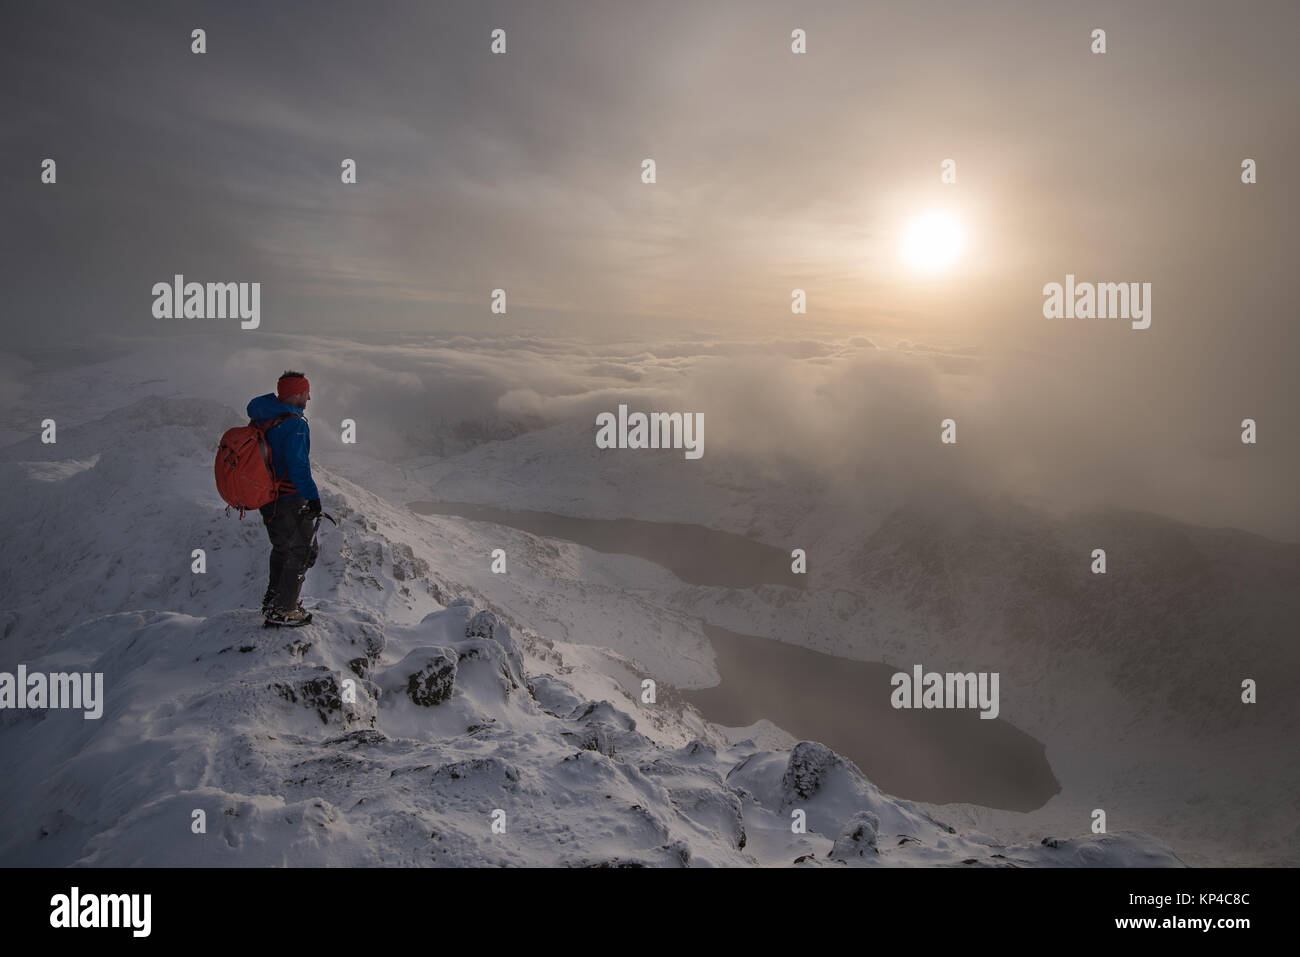 Figura en montañas nevadas cape en Snowdonia, montañismo mochila, antorchas, Foto de stock